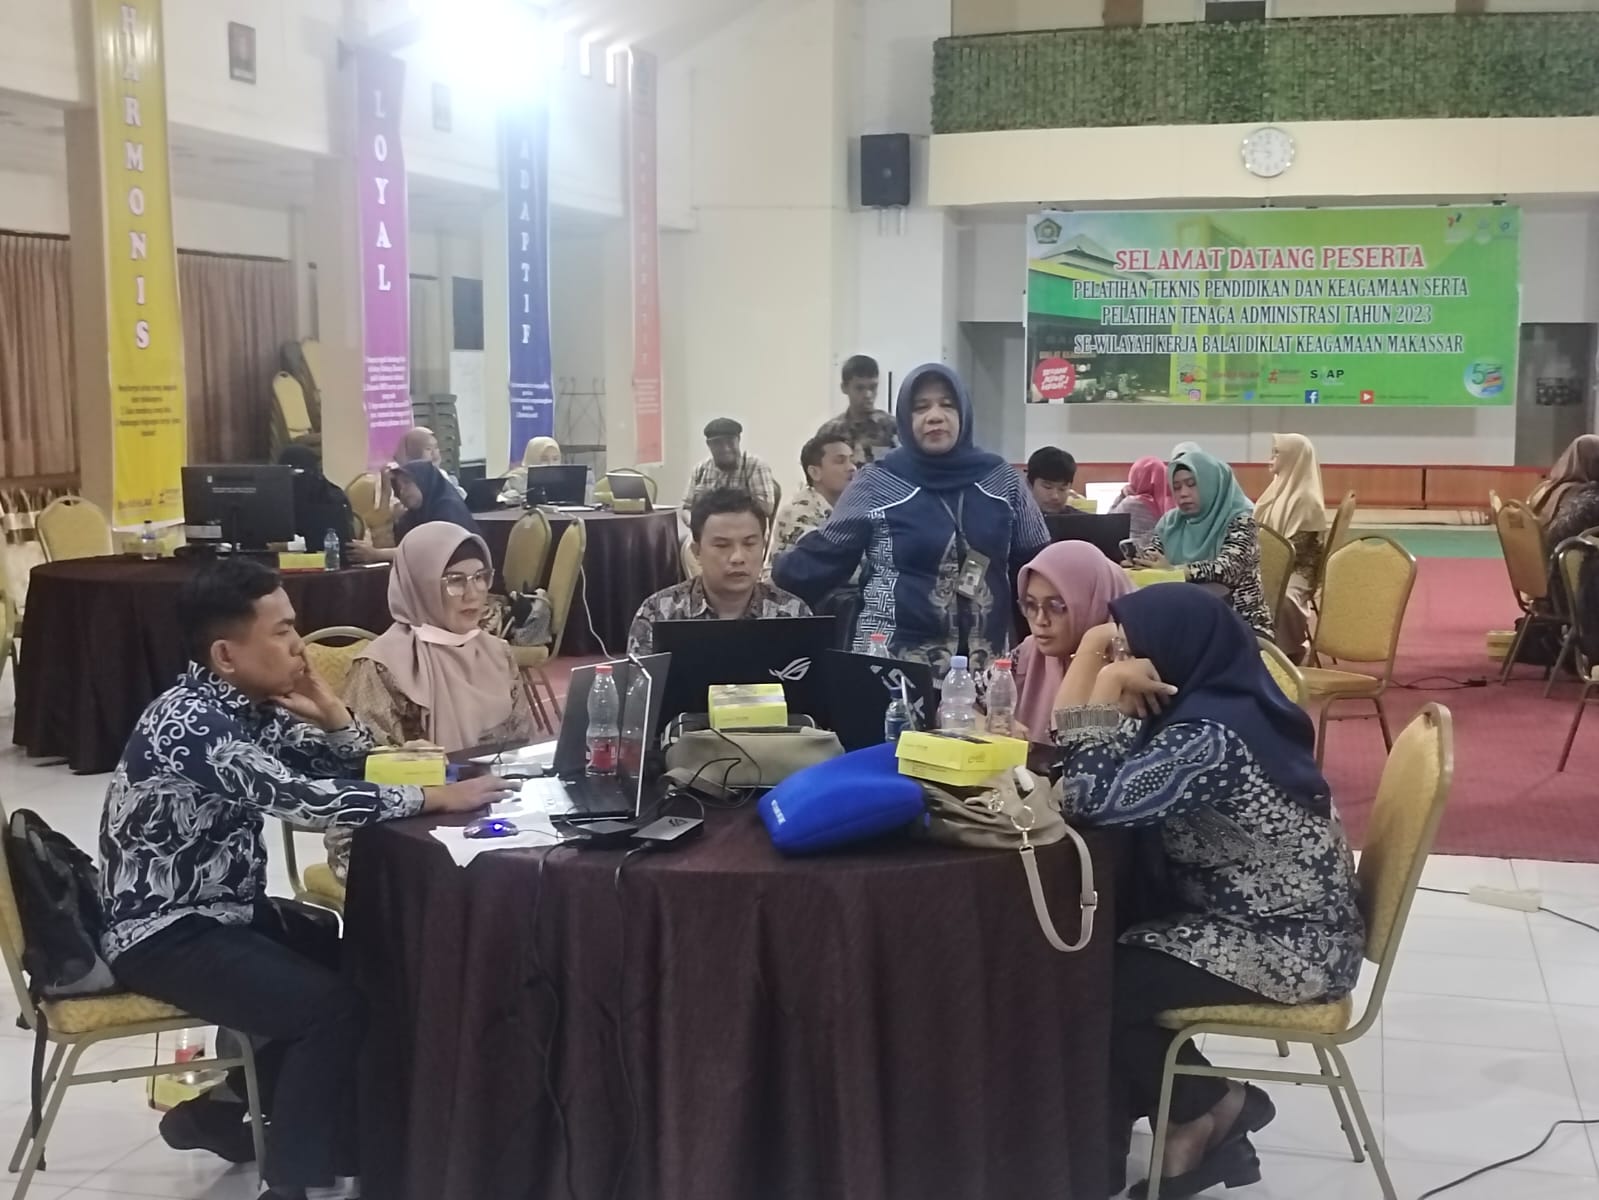 Uji Kompetensi PNS Kementerian Agama Jabatan Pelaksana di BDK Makassar dukung tranformasi yang dinamis, lincah dan profesional